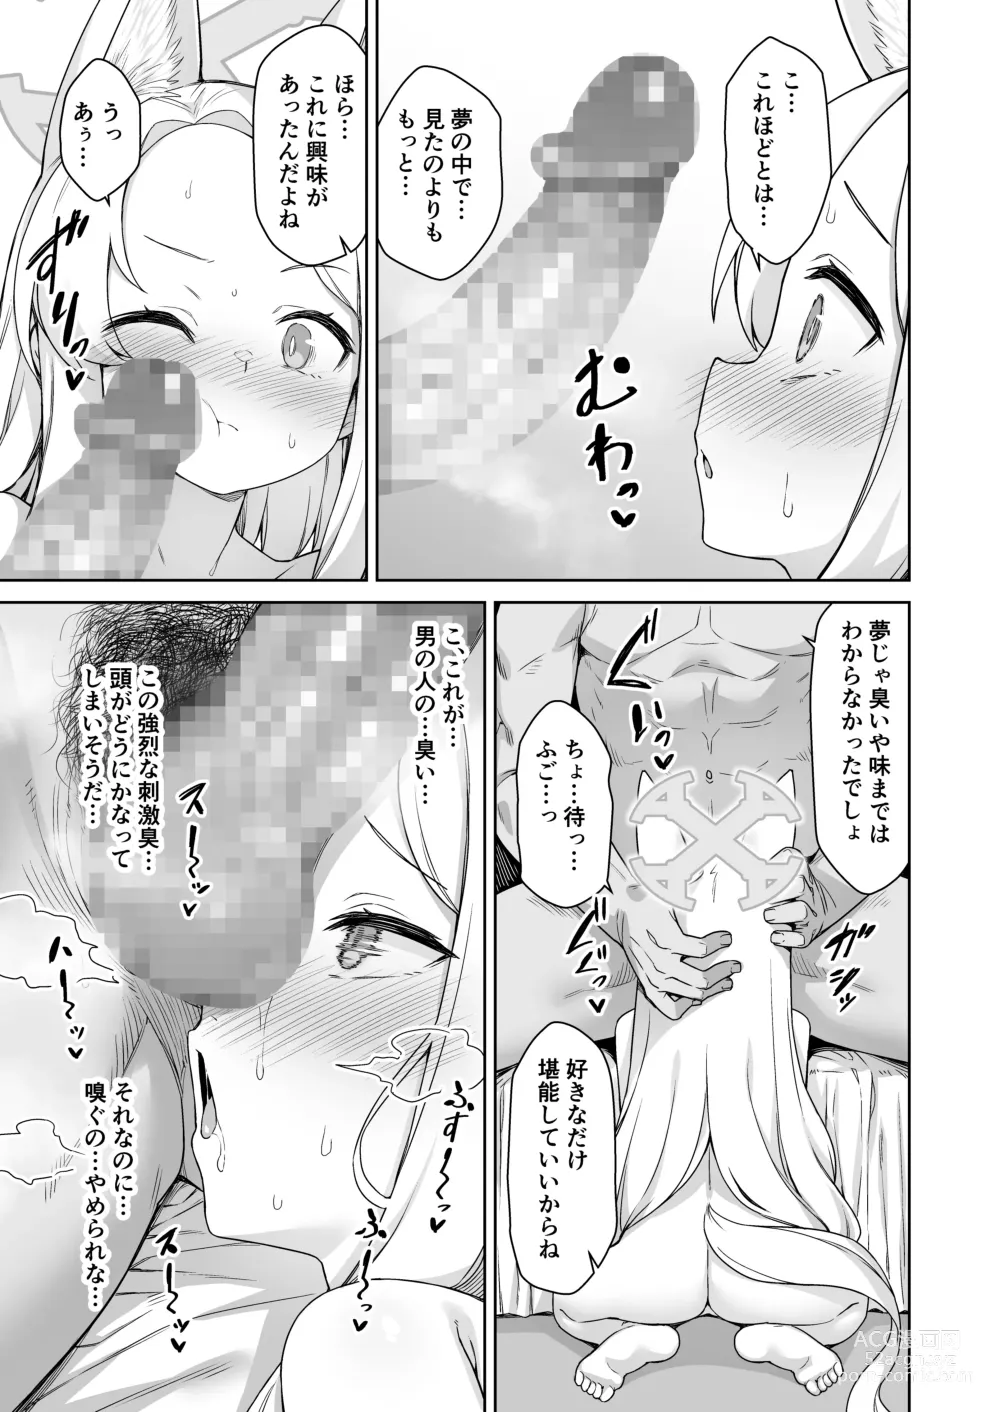 Page 7 of doujinshi Yurizono Seia wa Koyoi mo Midara na Yume wo Miru.